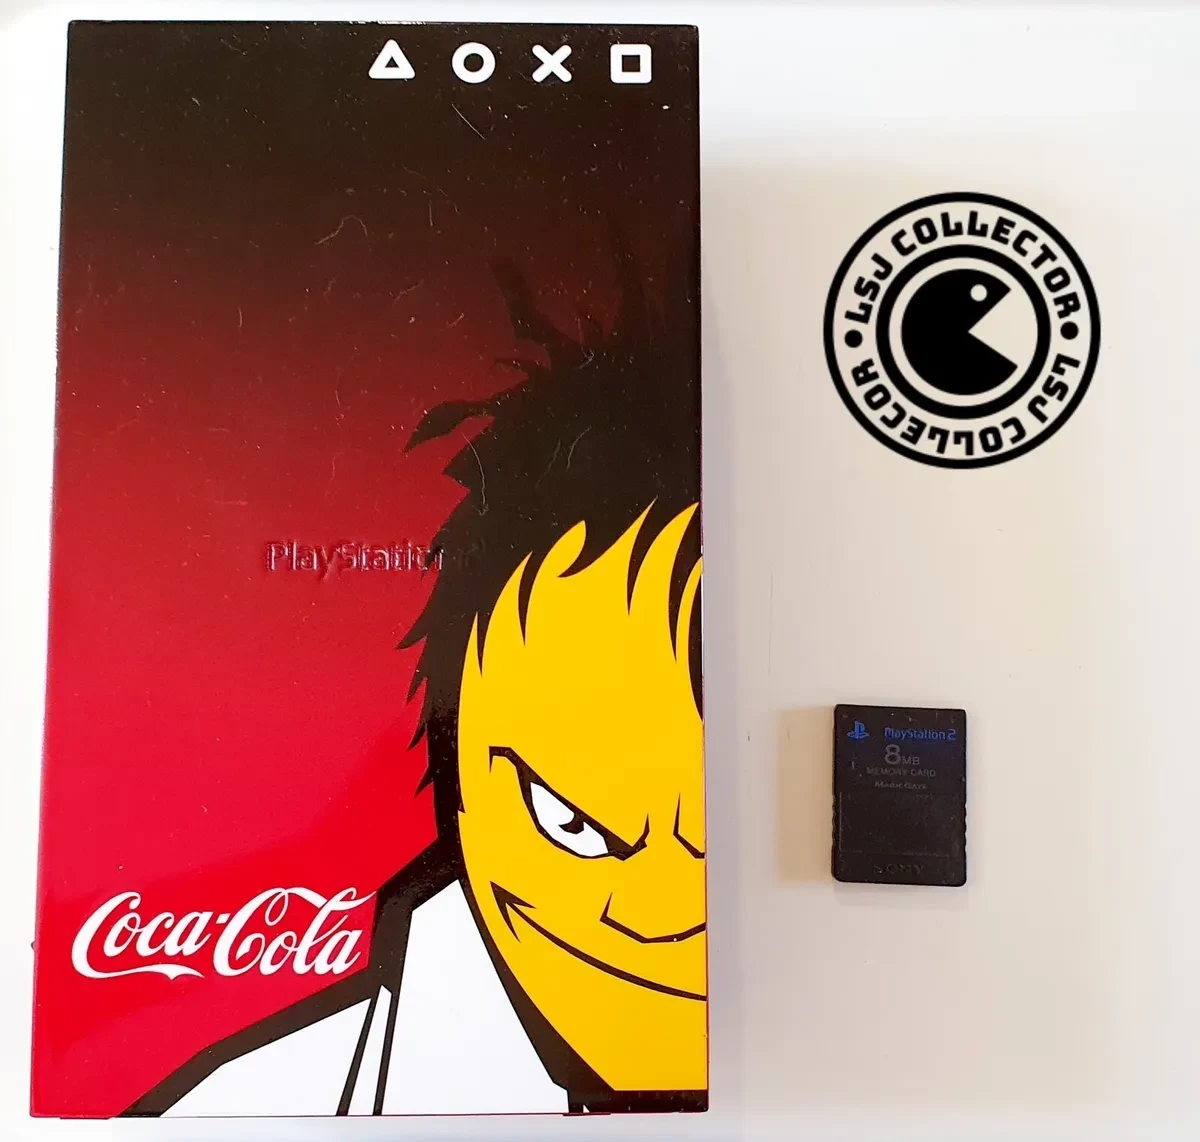  Sony PlayStation 2 Coca Cola Console